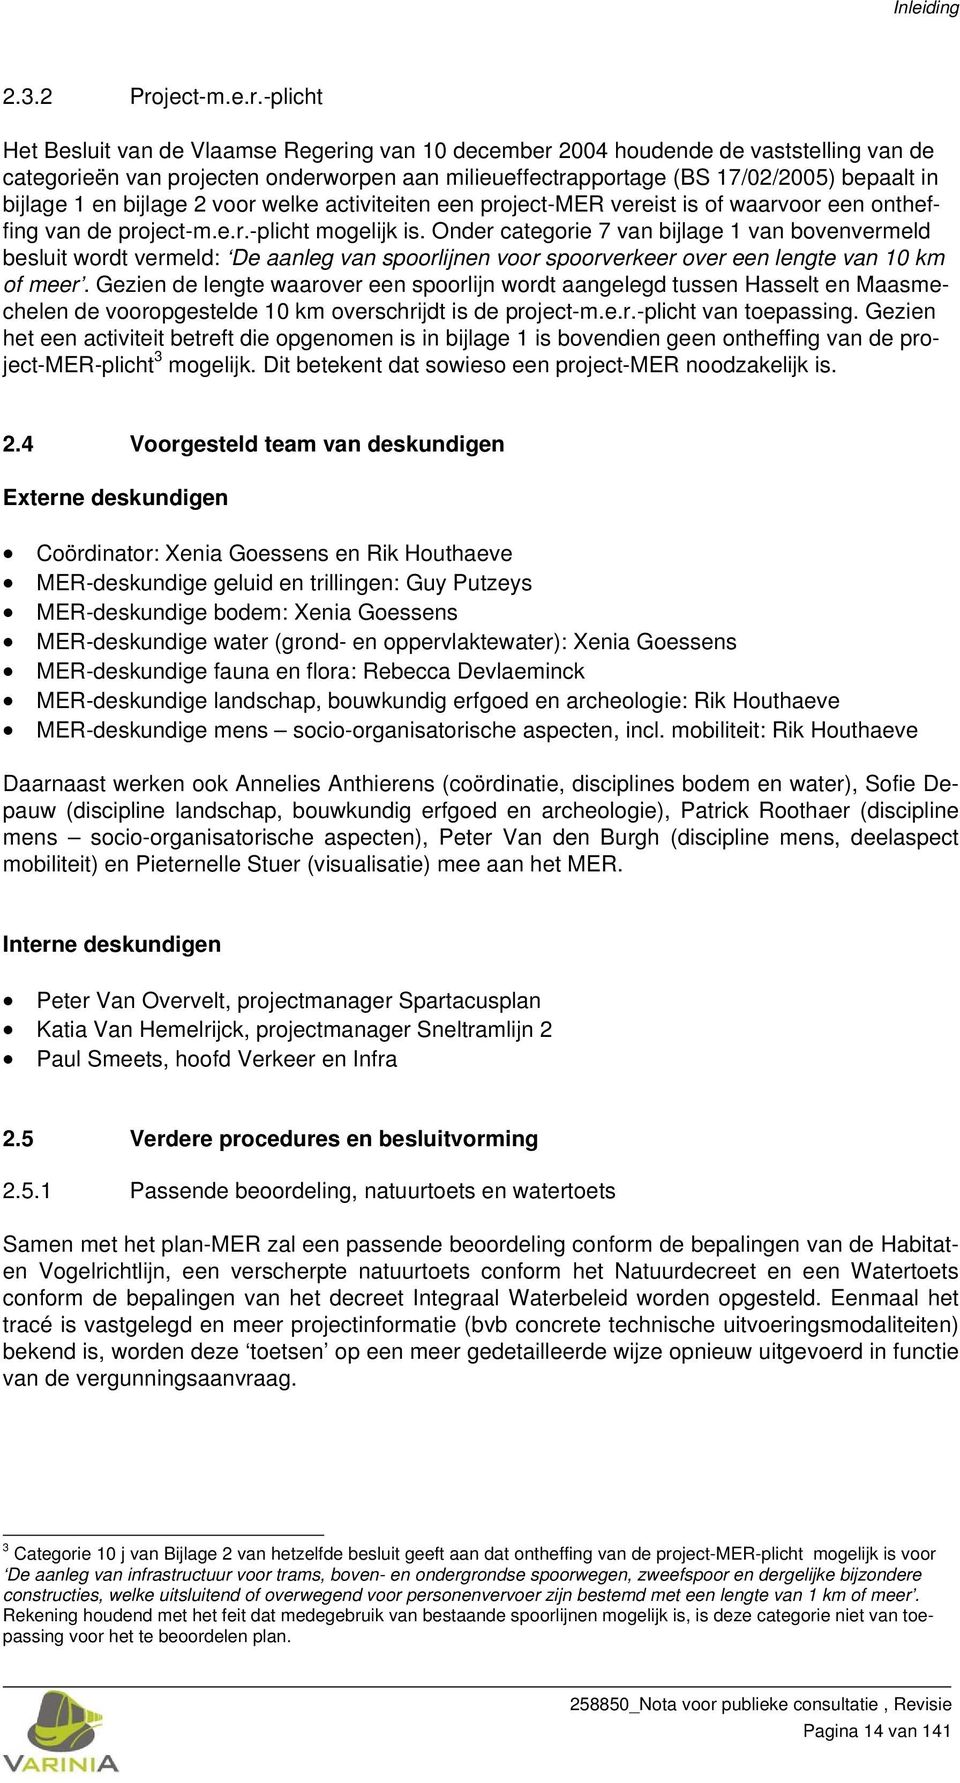 -plicht Het Besluit van de Vlaamse Regering van 10 december 2004 houdende de vaststelling van de categorieën van projecten onderworpen aan milieueffectrapportage (BS 17/02/2005) bepaalt in bijlage 1